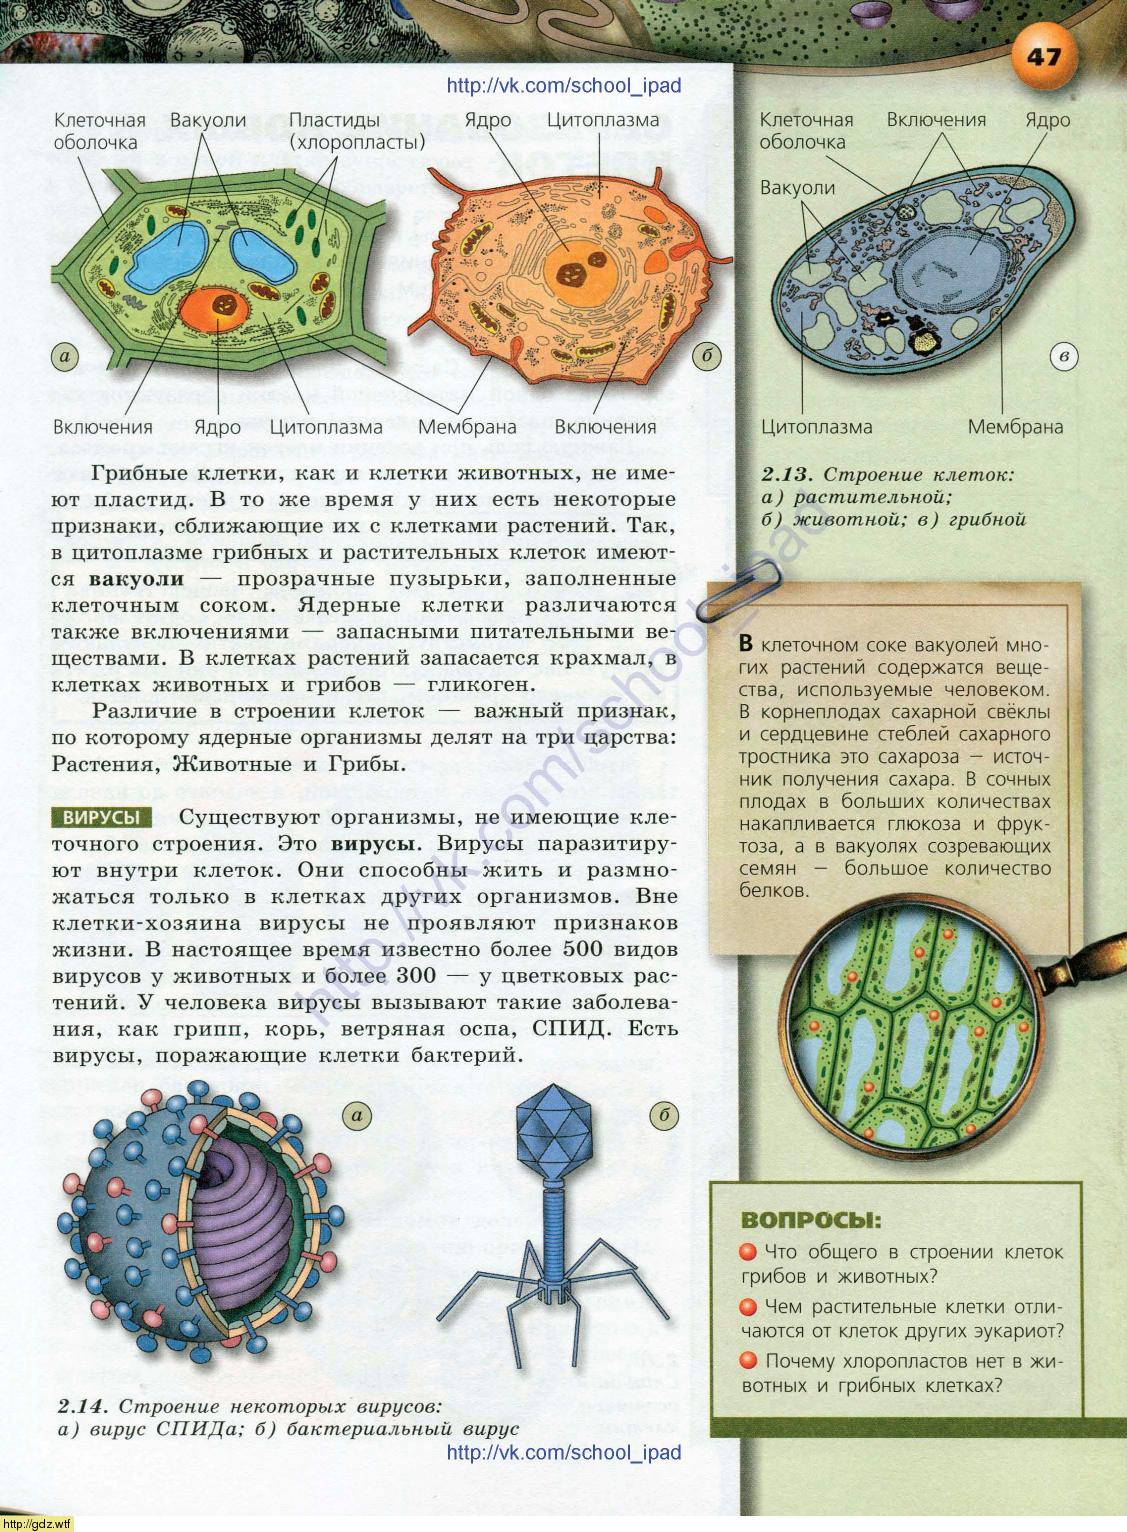 Биология 6 класс учебник строение клетки